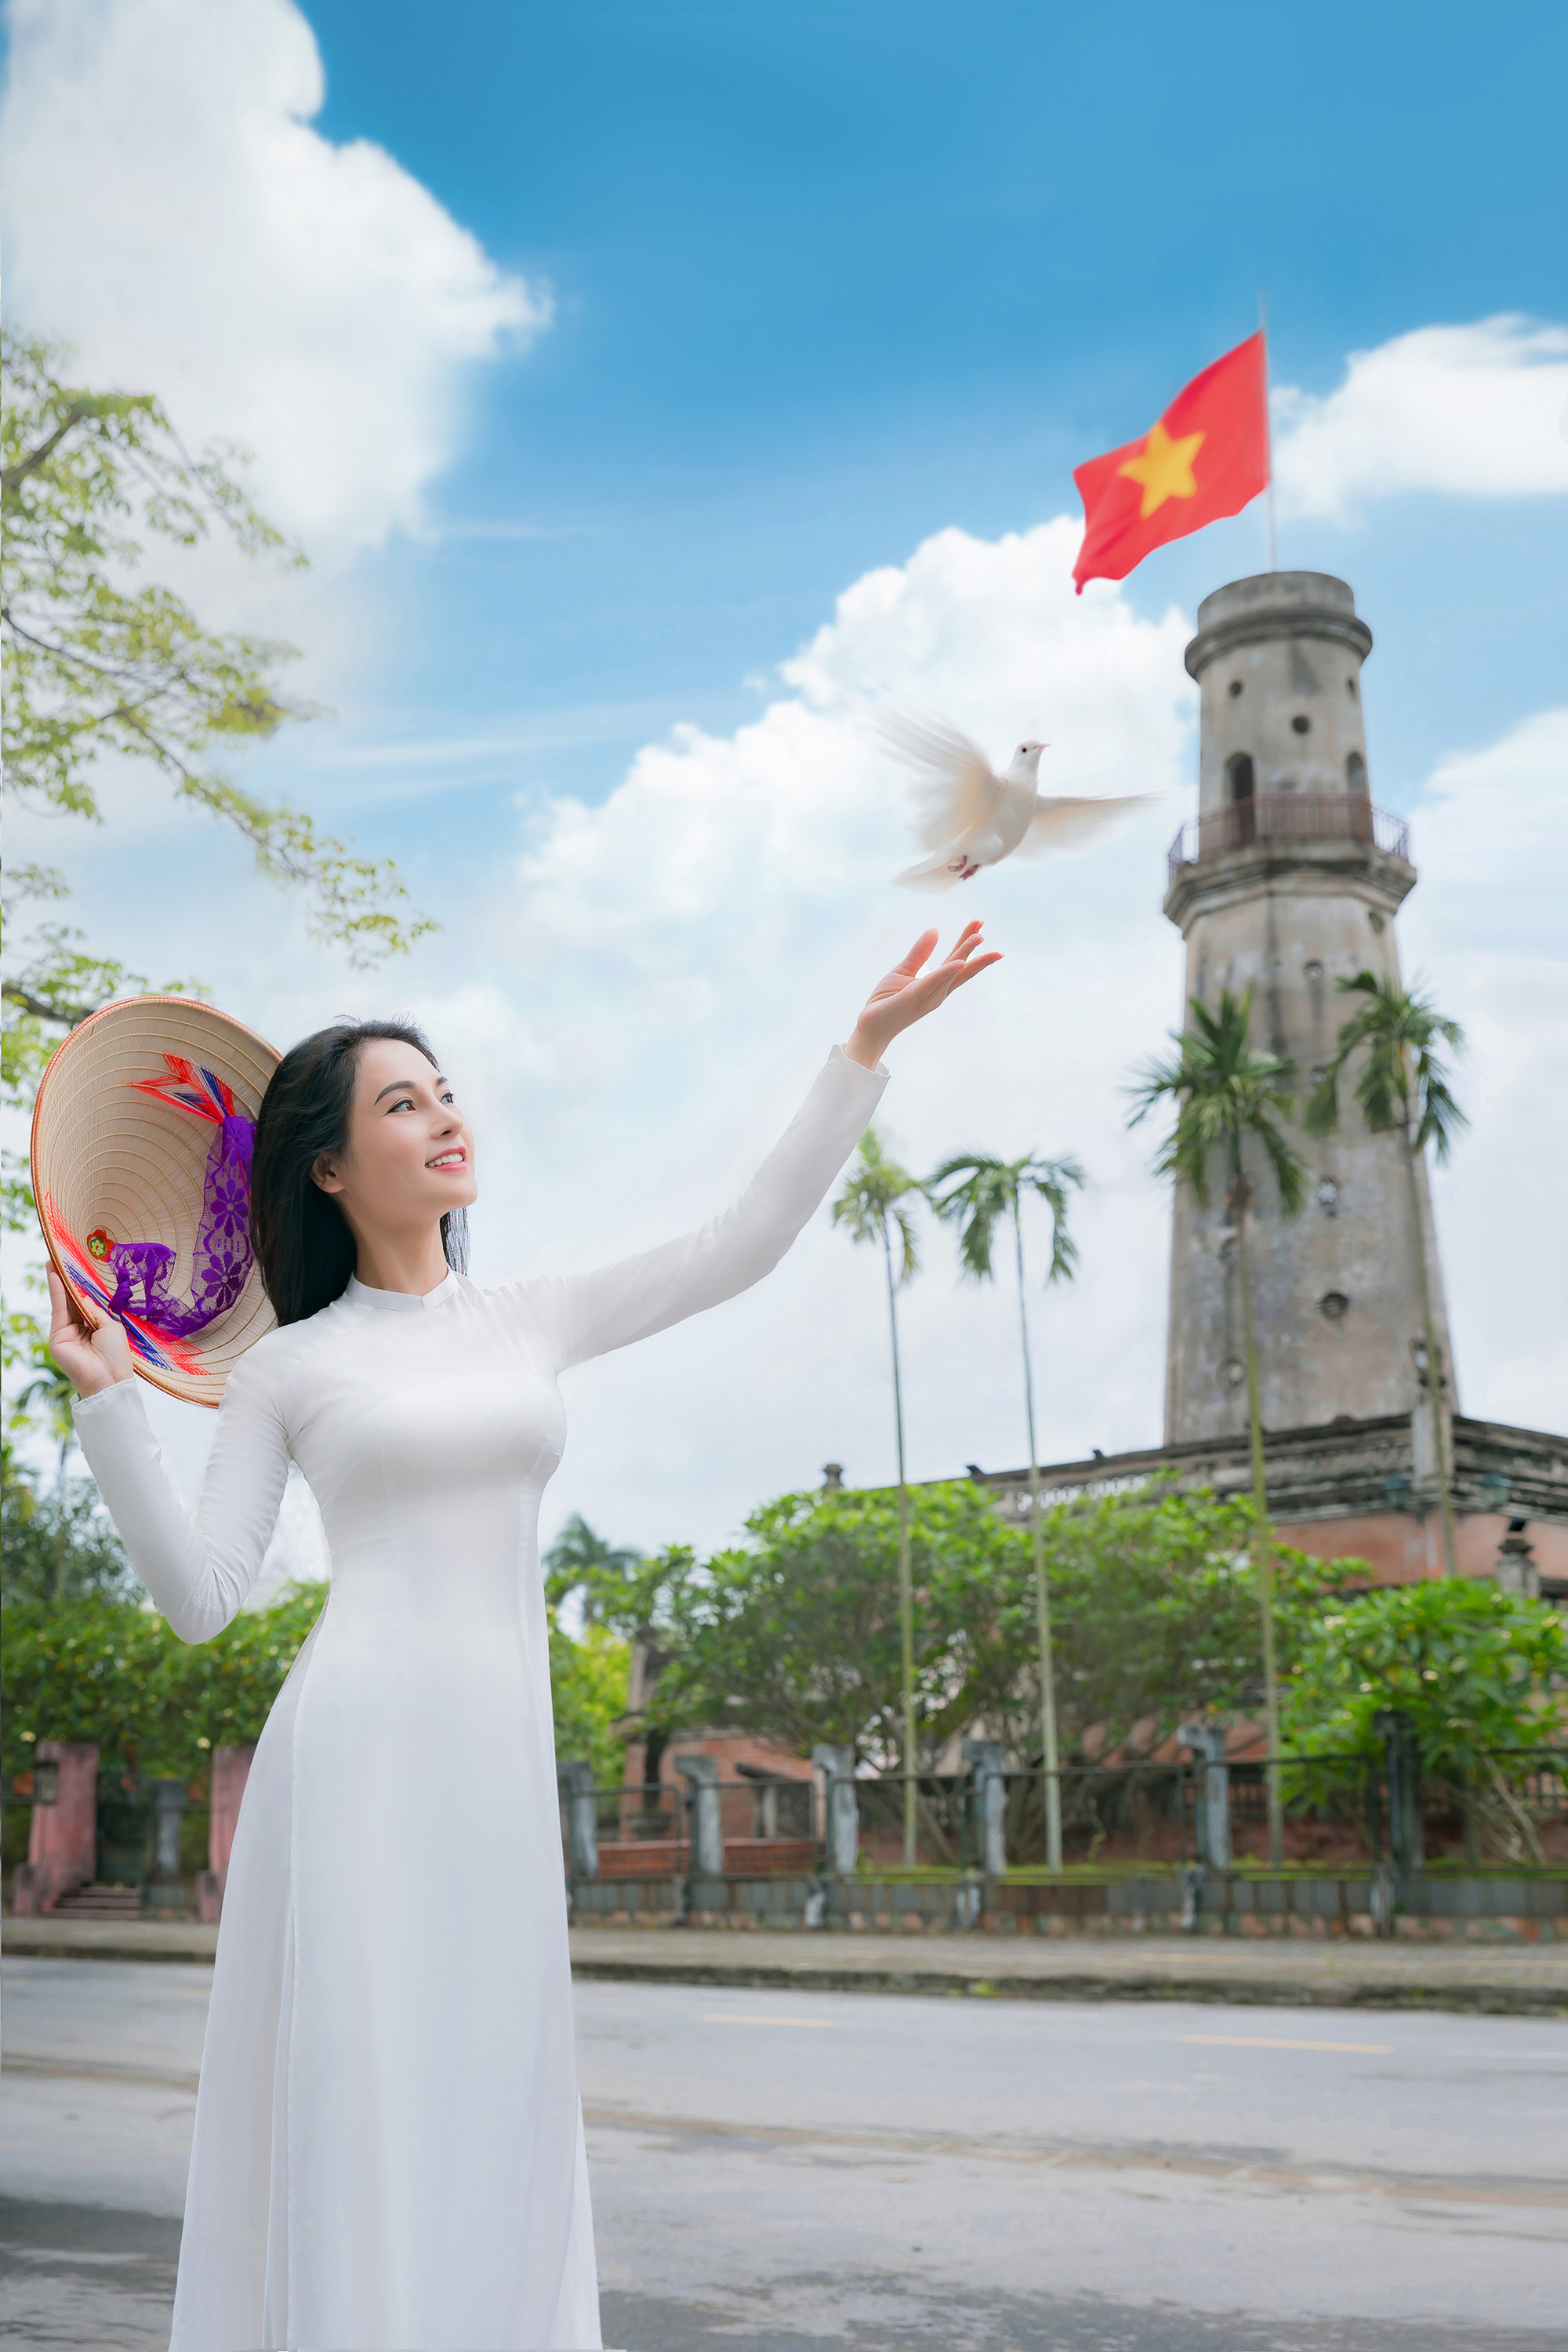 Áo dài Việt - một biểu tượng của văn hóa truyền thống Việt Nam. Quần áo được thiết kế với đường nét tinh tế, mang lại một vẻ đẹp trang nhã và thước phim độc đáo. Nhấp vào hình ảnh để tìm hiểu về lịch sử và phong cách áo dài Việt.